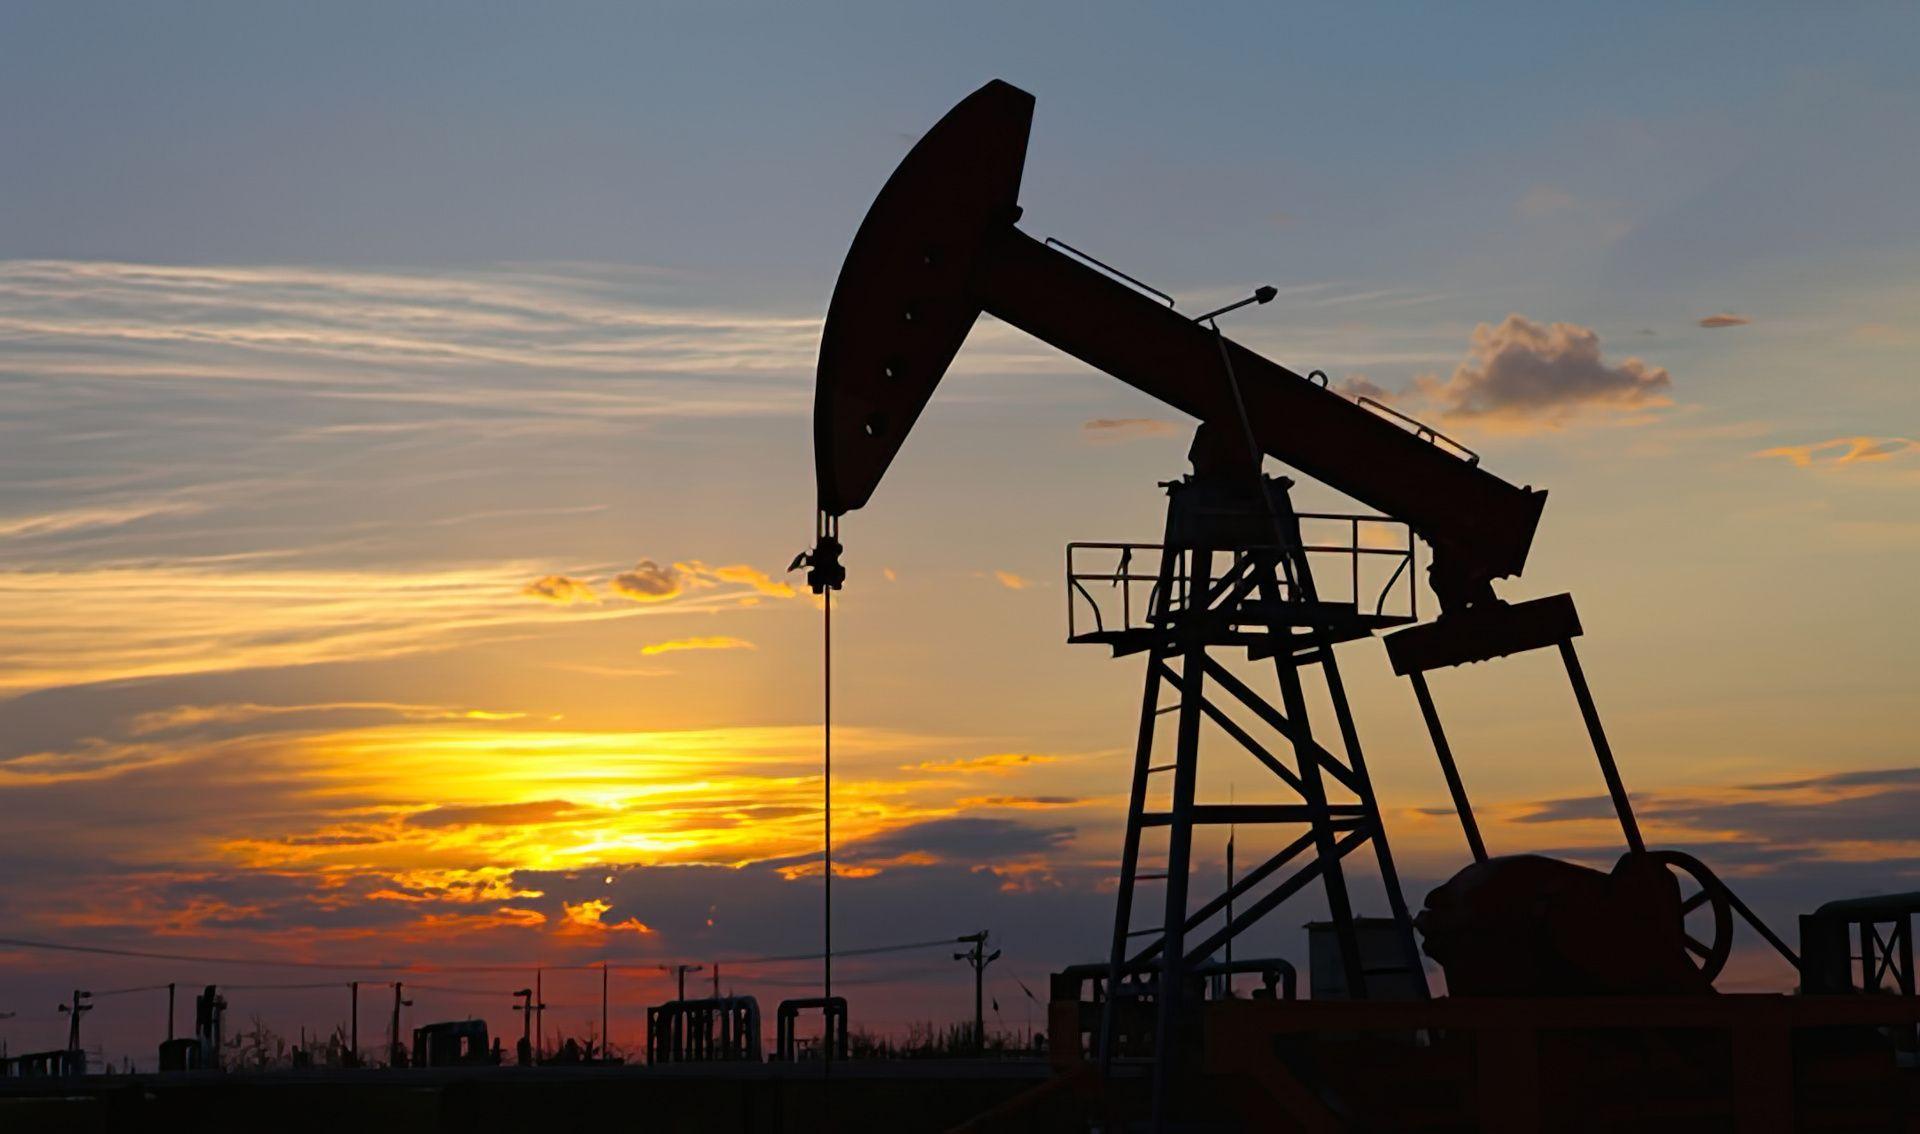 Ölförderanlage im Sonnenuntergang, symbolisch für Energiegewinnung.